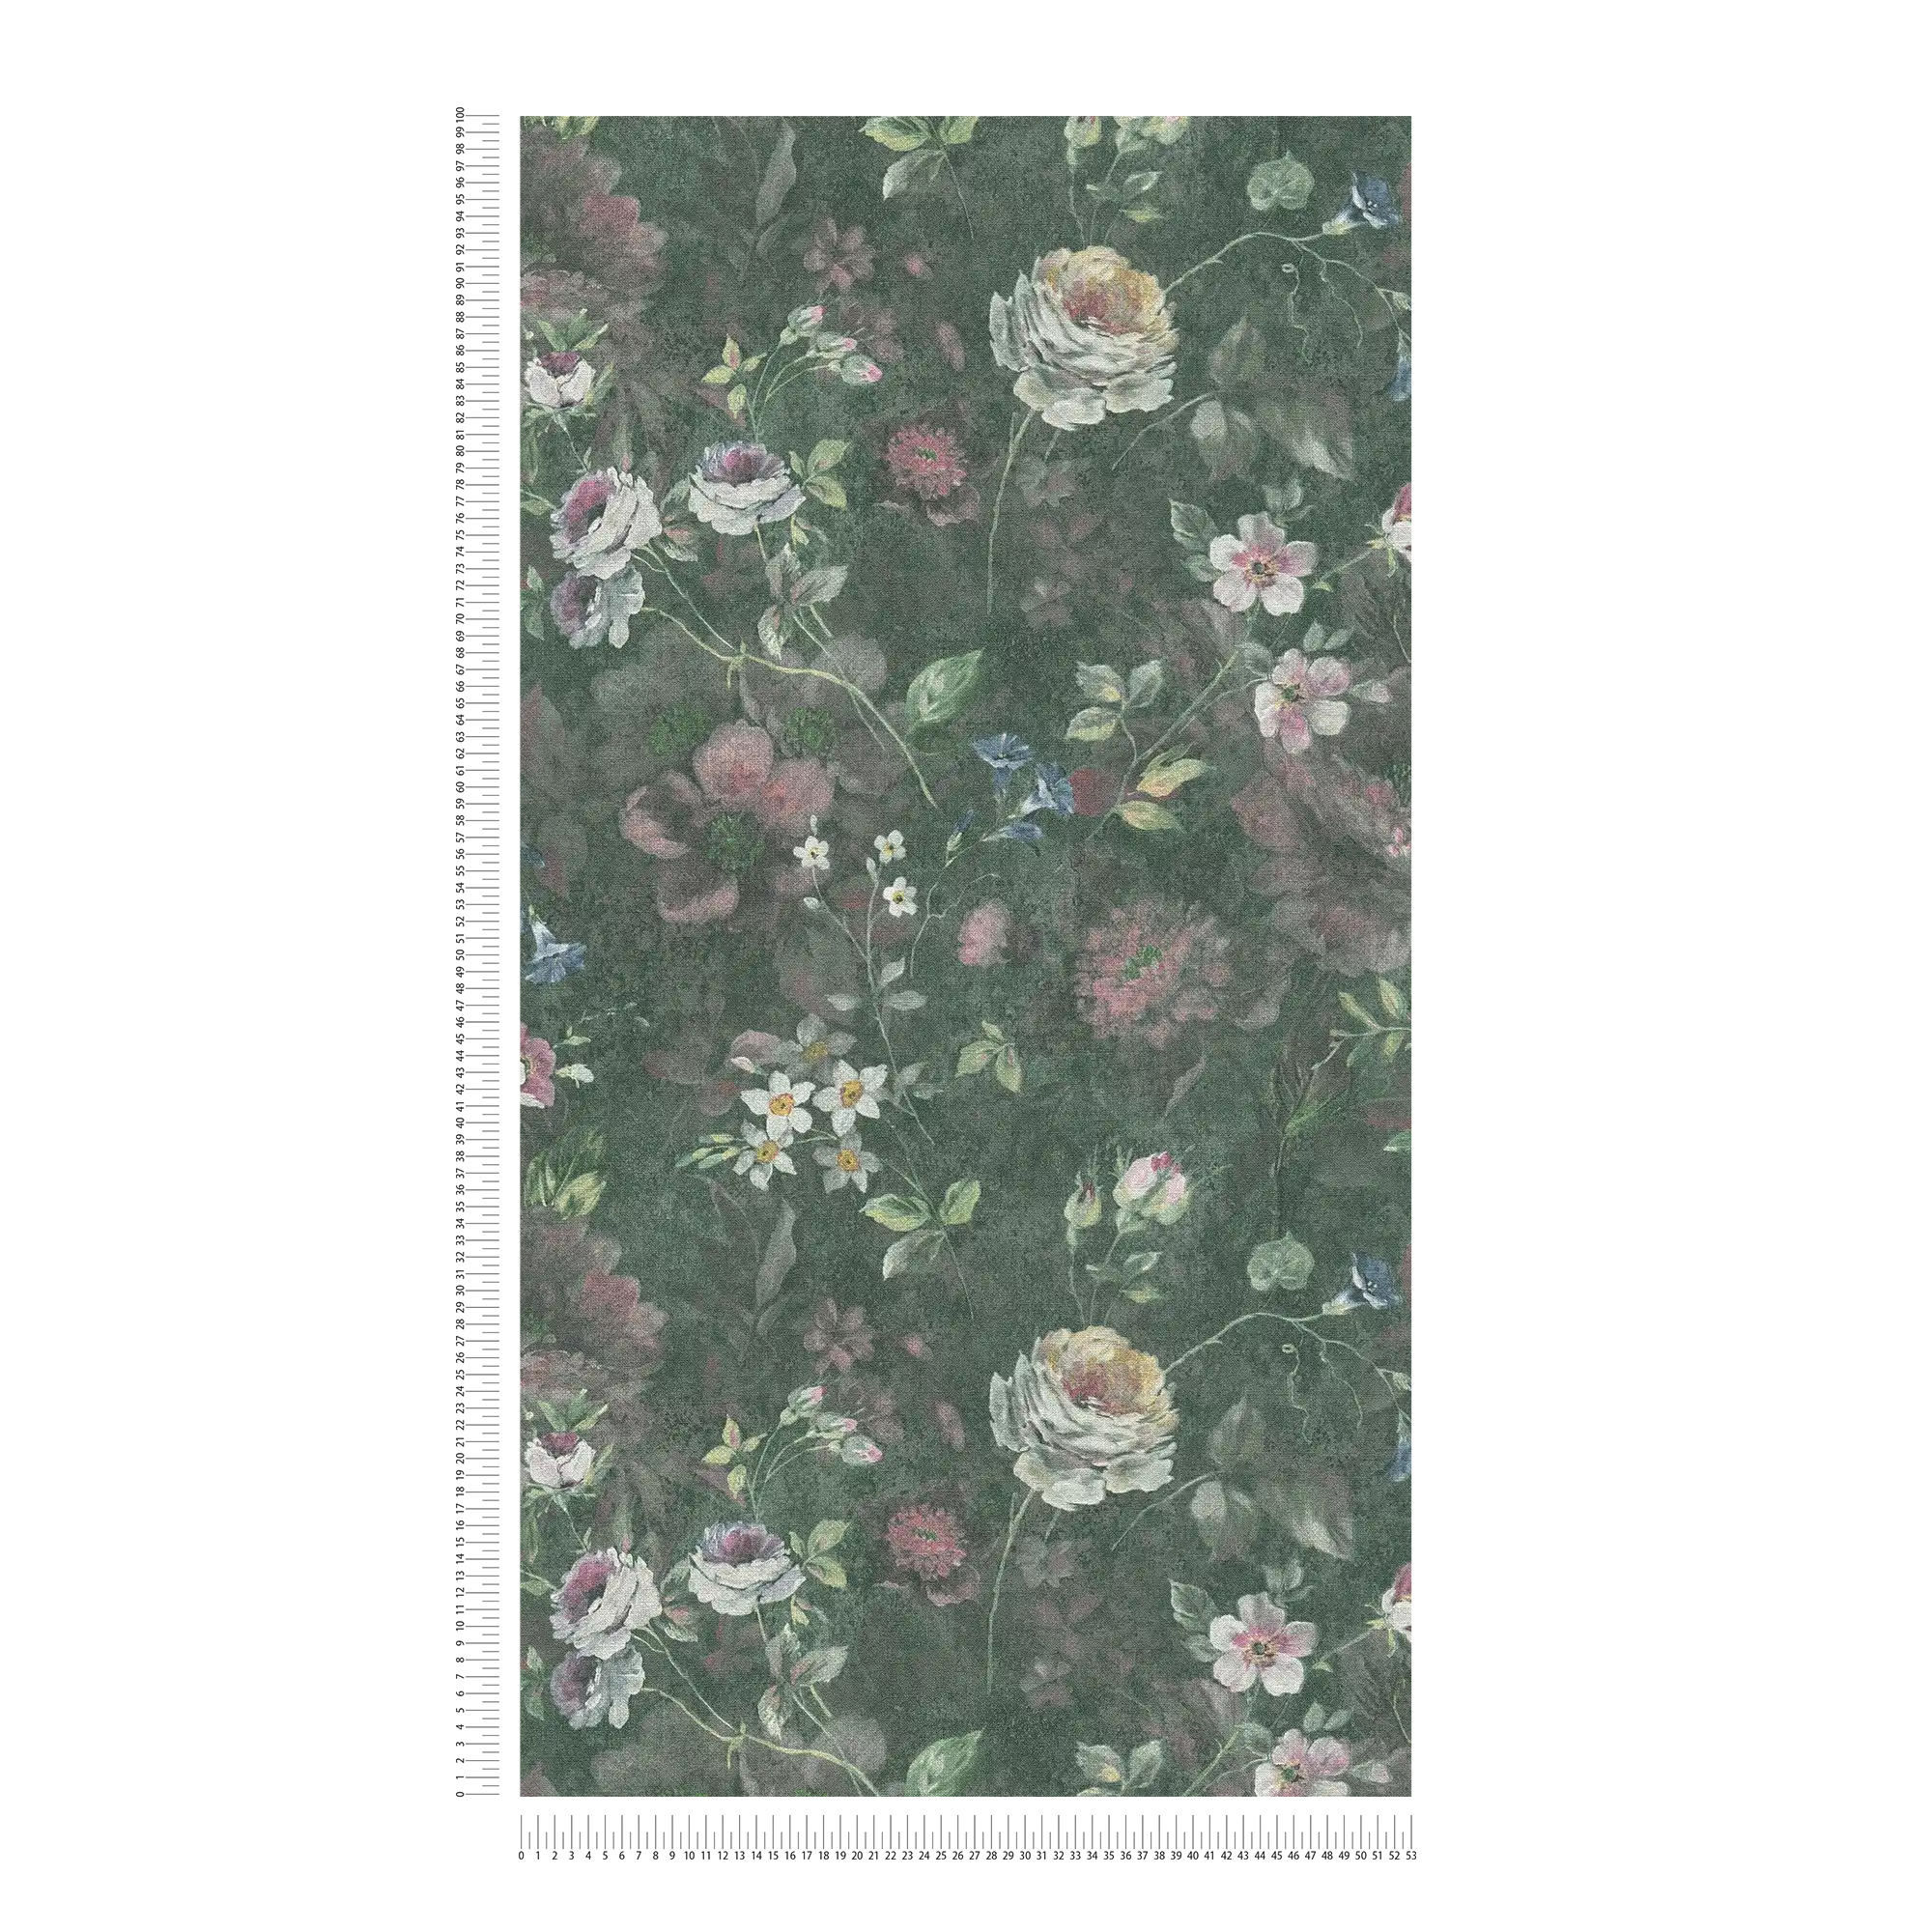             Vliesbehang met geschilderd bloemenpatroon PVC-vrij - groen, wit, roze
        